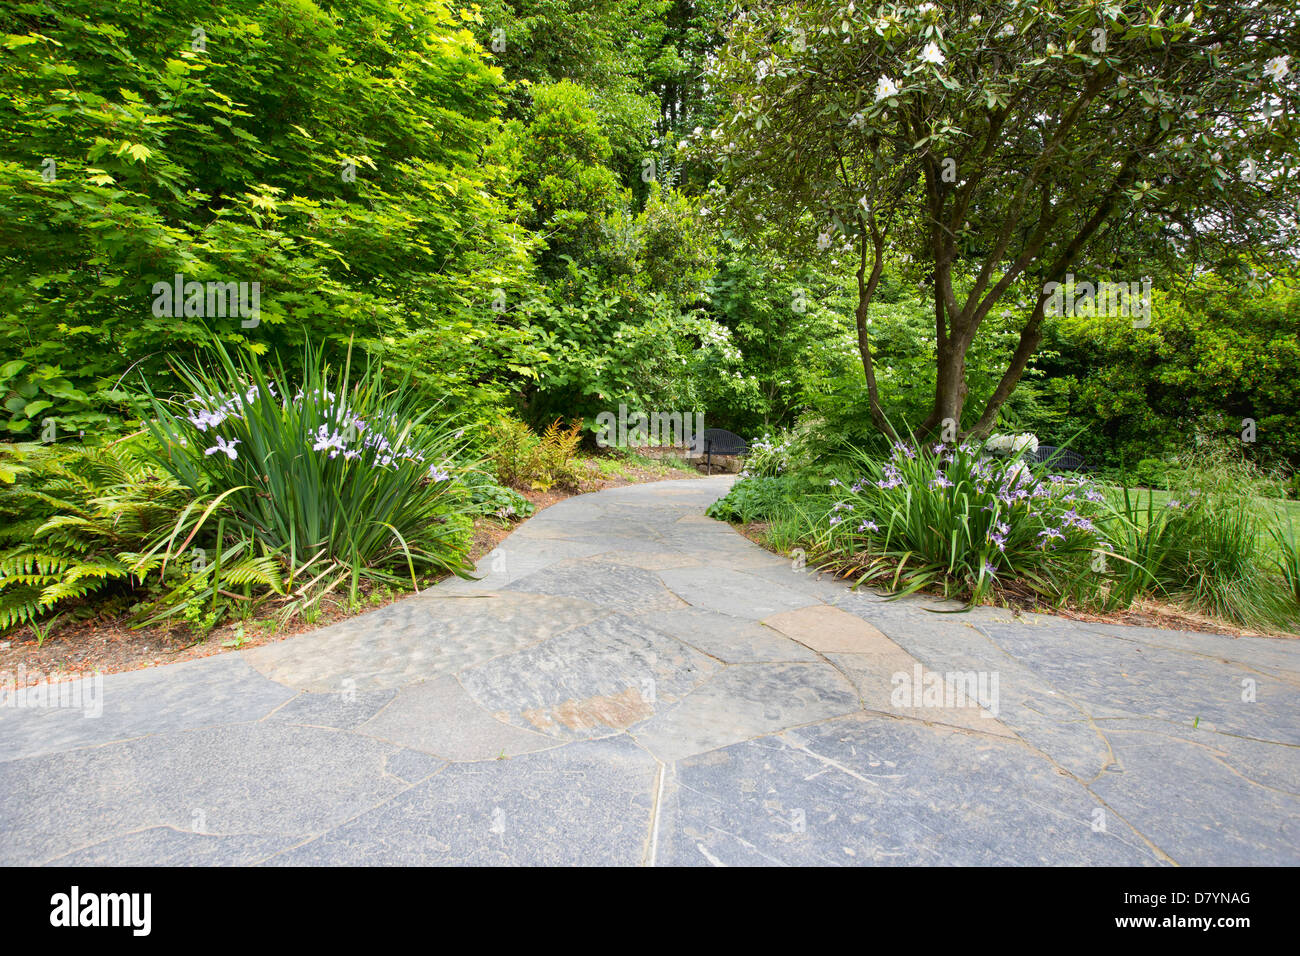 Schiefer-Stein-Garten Weg Gehweg mit Oregon Iris Bäume und Sträucher Stockfoto